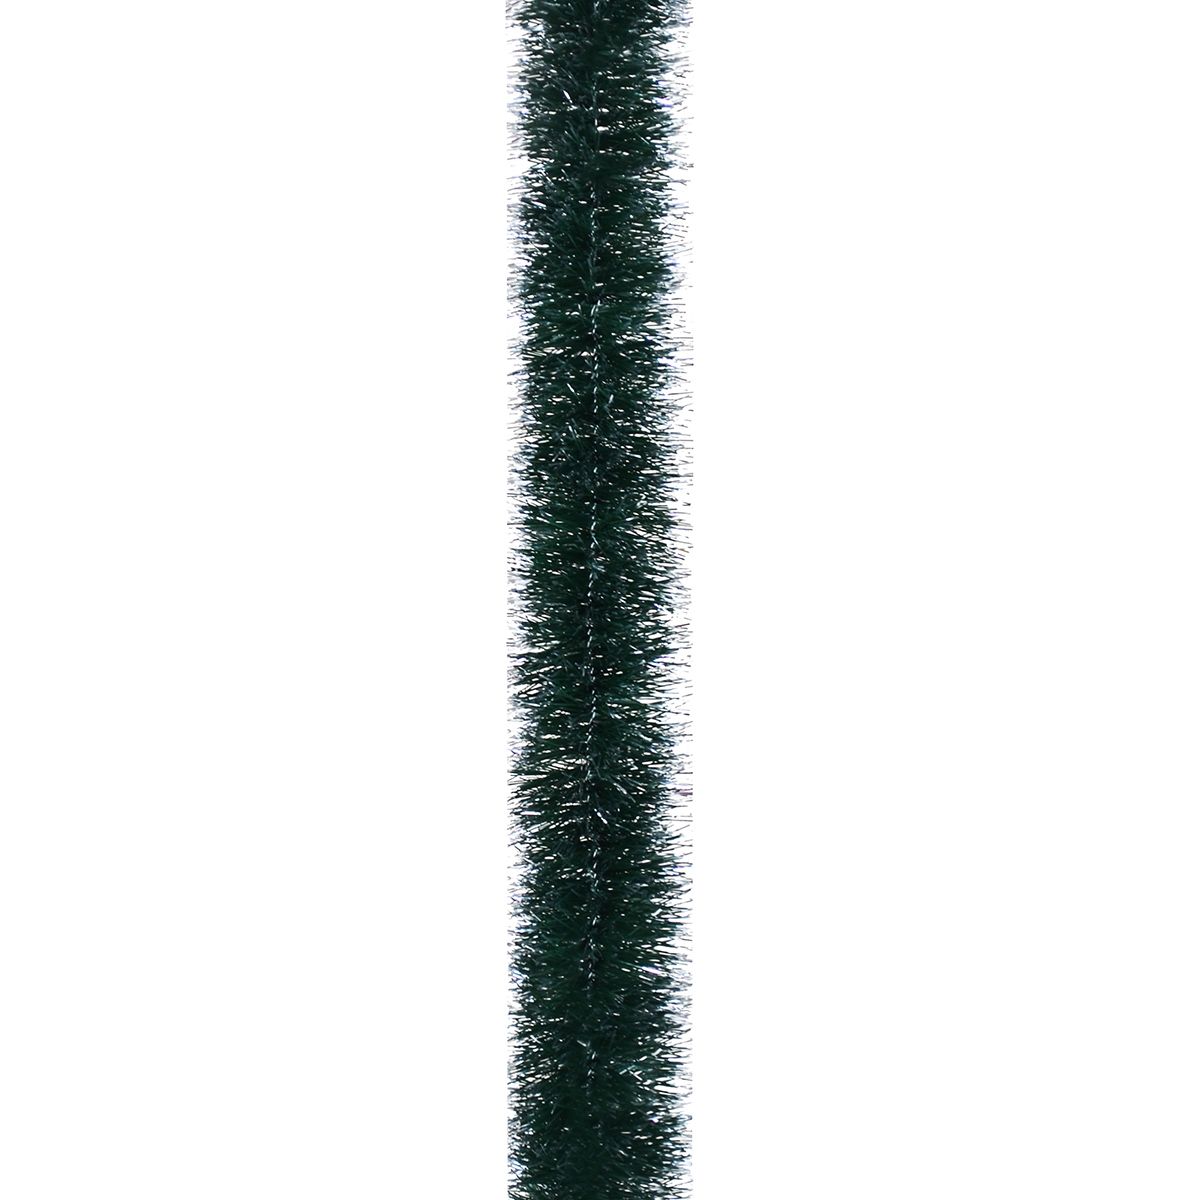 Мішура Novogod'ko 5 см 2 м зелена матова з срібними кінчиками (980376) - фото 1